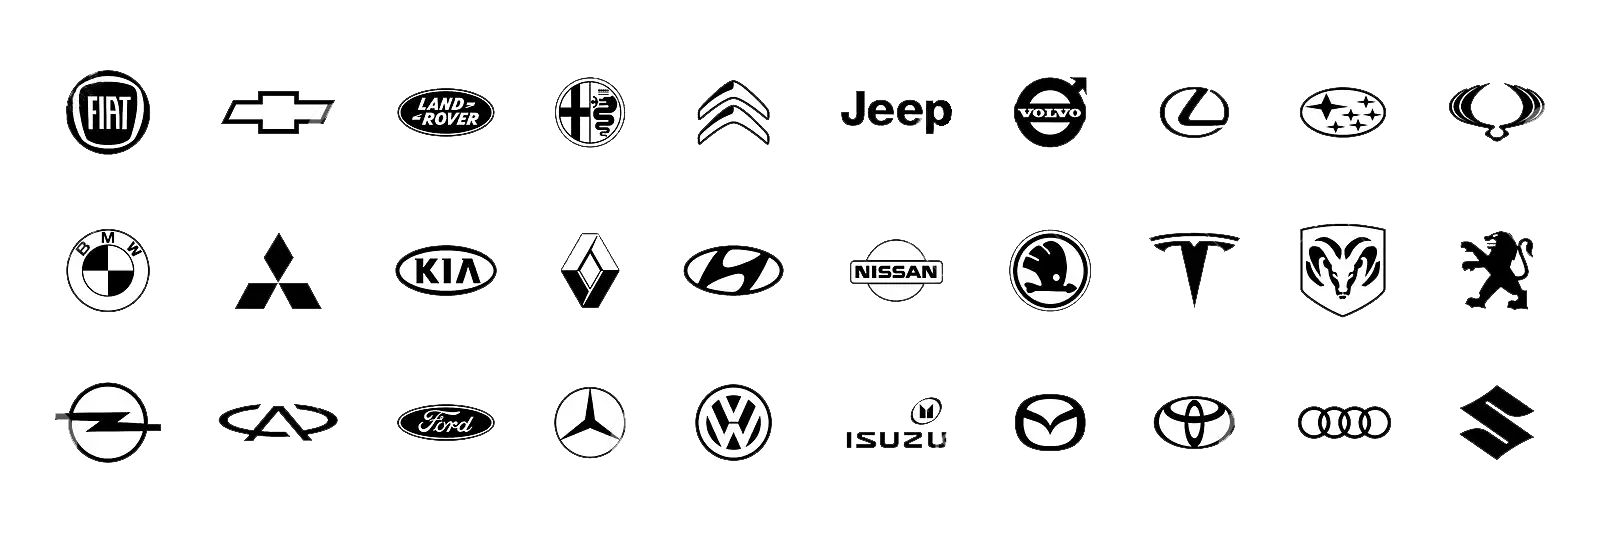 collection-de-marques-voitures-populaires-logo-automobile-fond-blanc-illustration-vectorielle